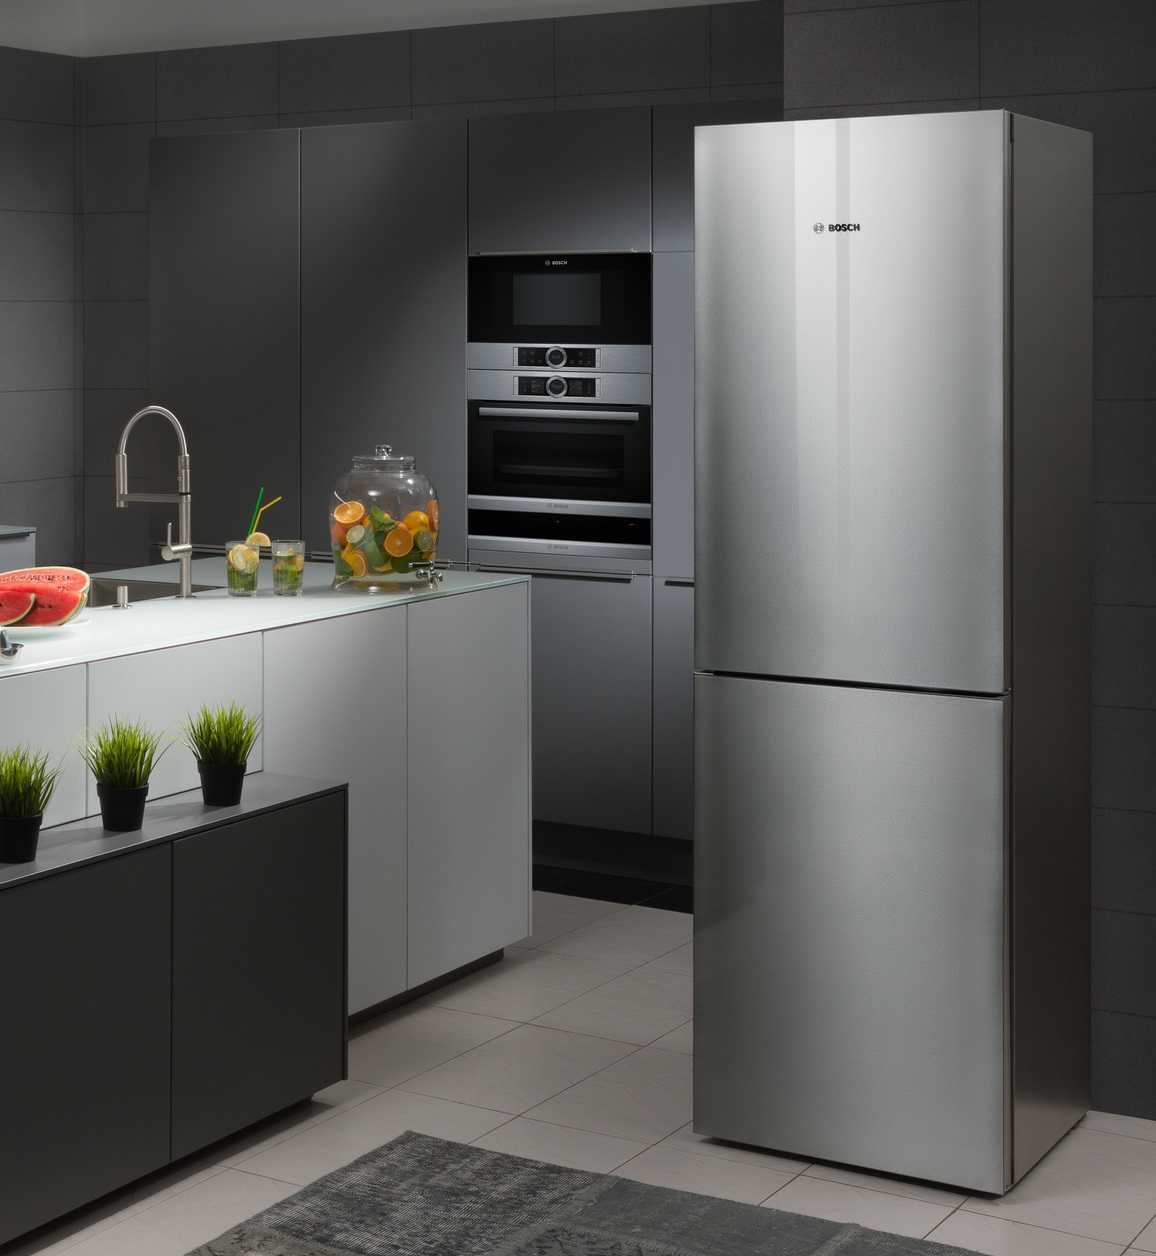 Лучшие производители холодильников 2020 года для дома по качеству: рейтинг надежных марок по мнению эксперта